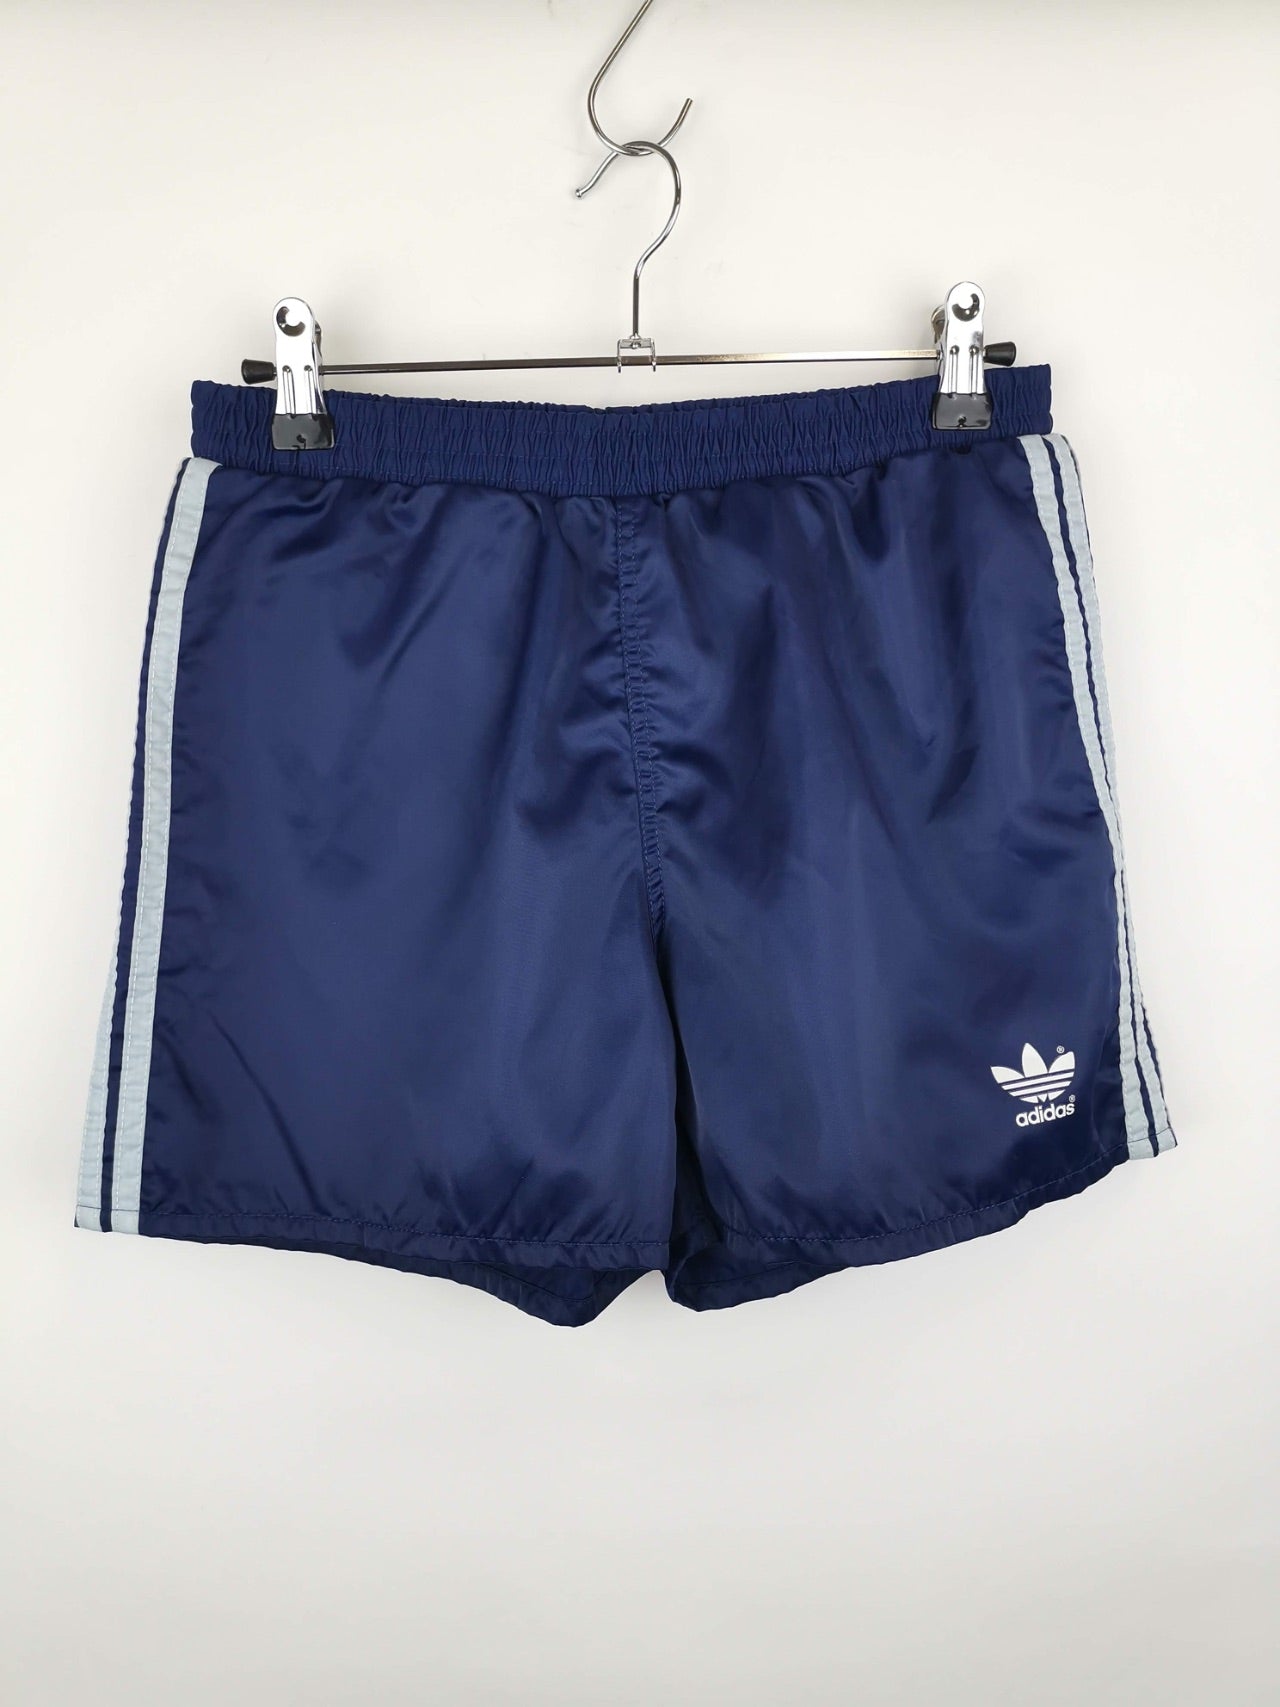 Shorts Rocky Adidas Azul Marino / Talla S / Running Shorts